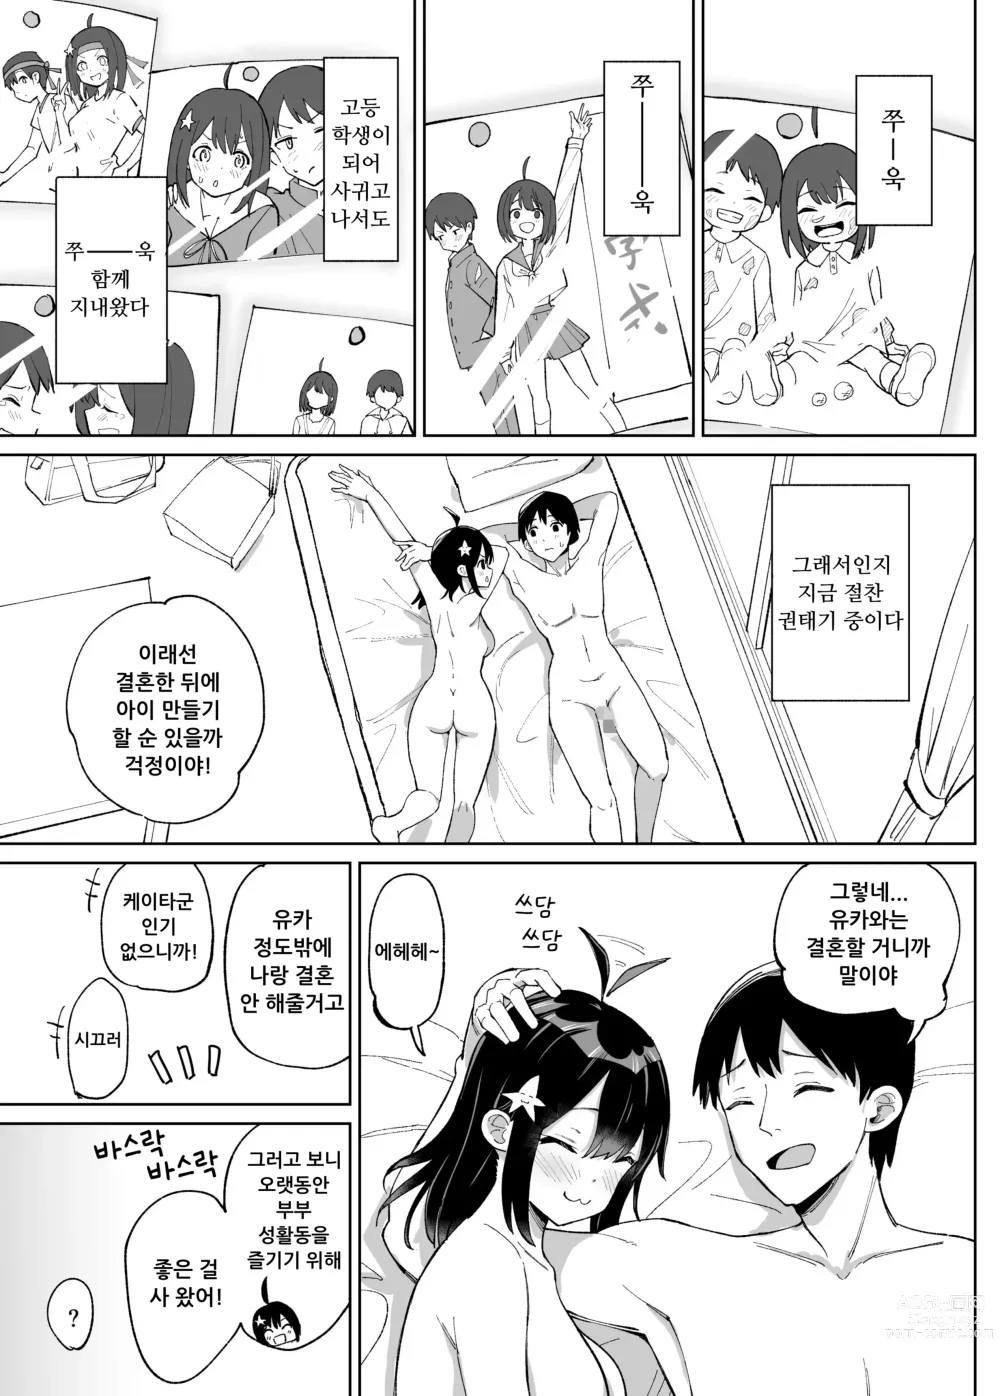 Page 4 of doujinshi 소꿉친구인 그녀에게 받은 X'mas 선물은 네토라레 였습니다